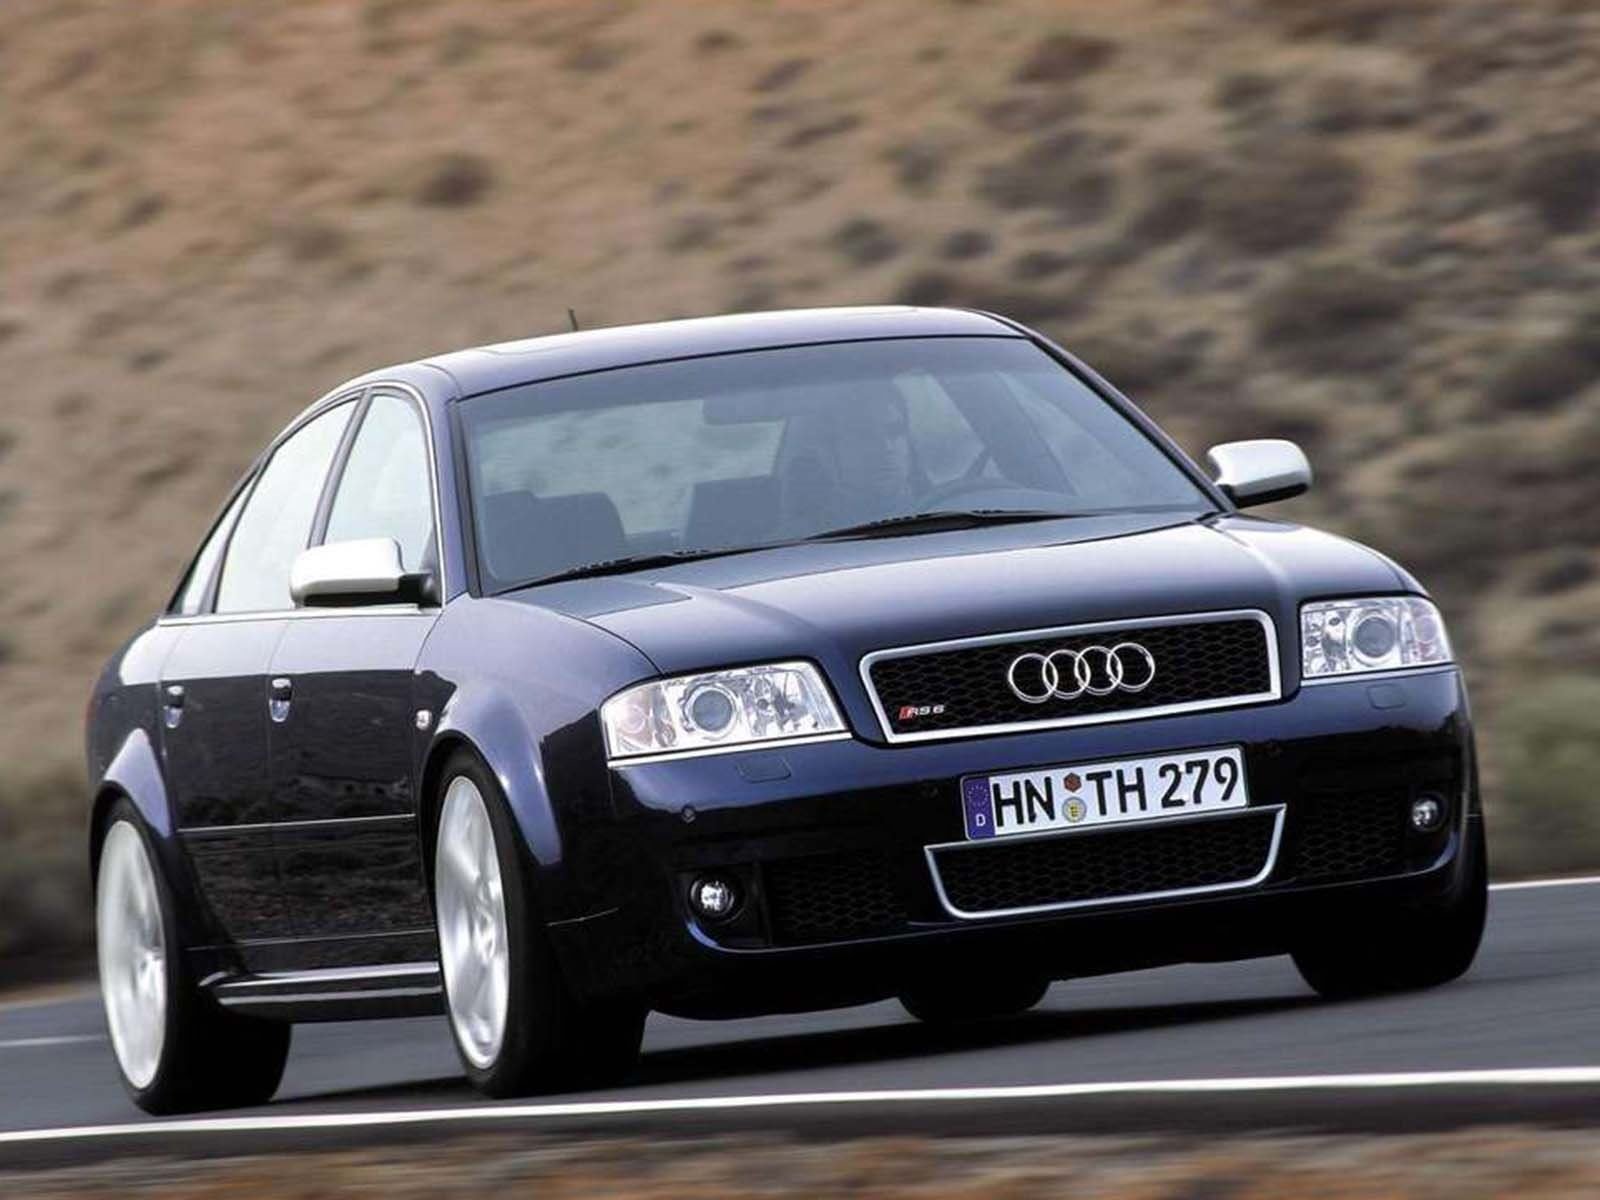 6 c 04. Audi rs6 2002. Ауди rs6 c5. Audi rs6 c5 sedan. Ауди РС 6 2002 седан.